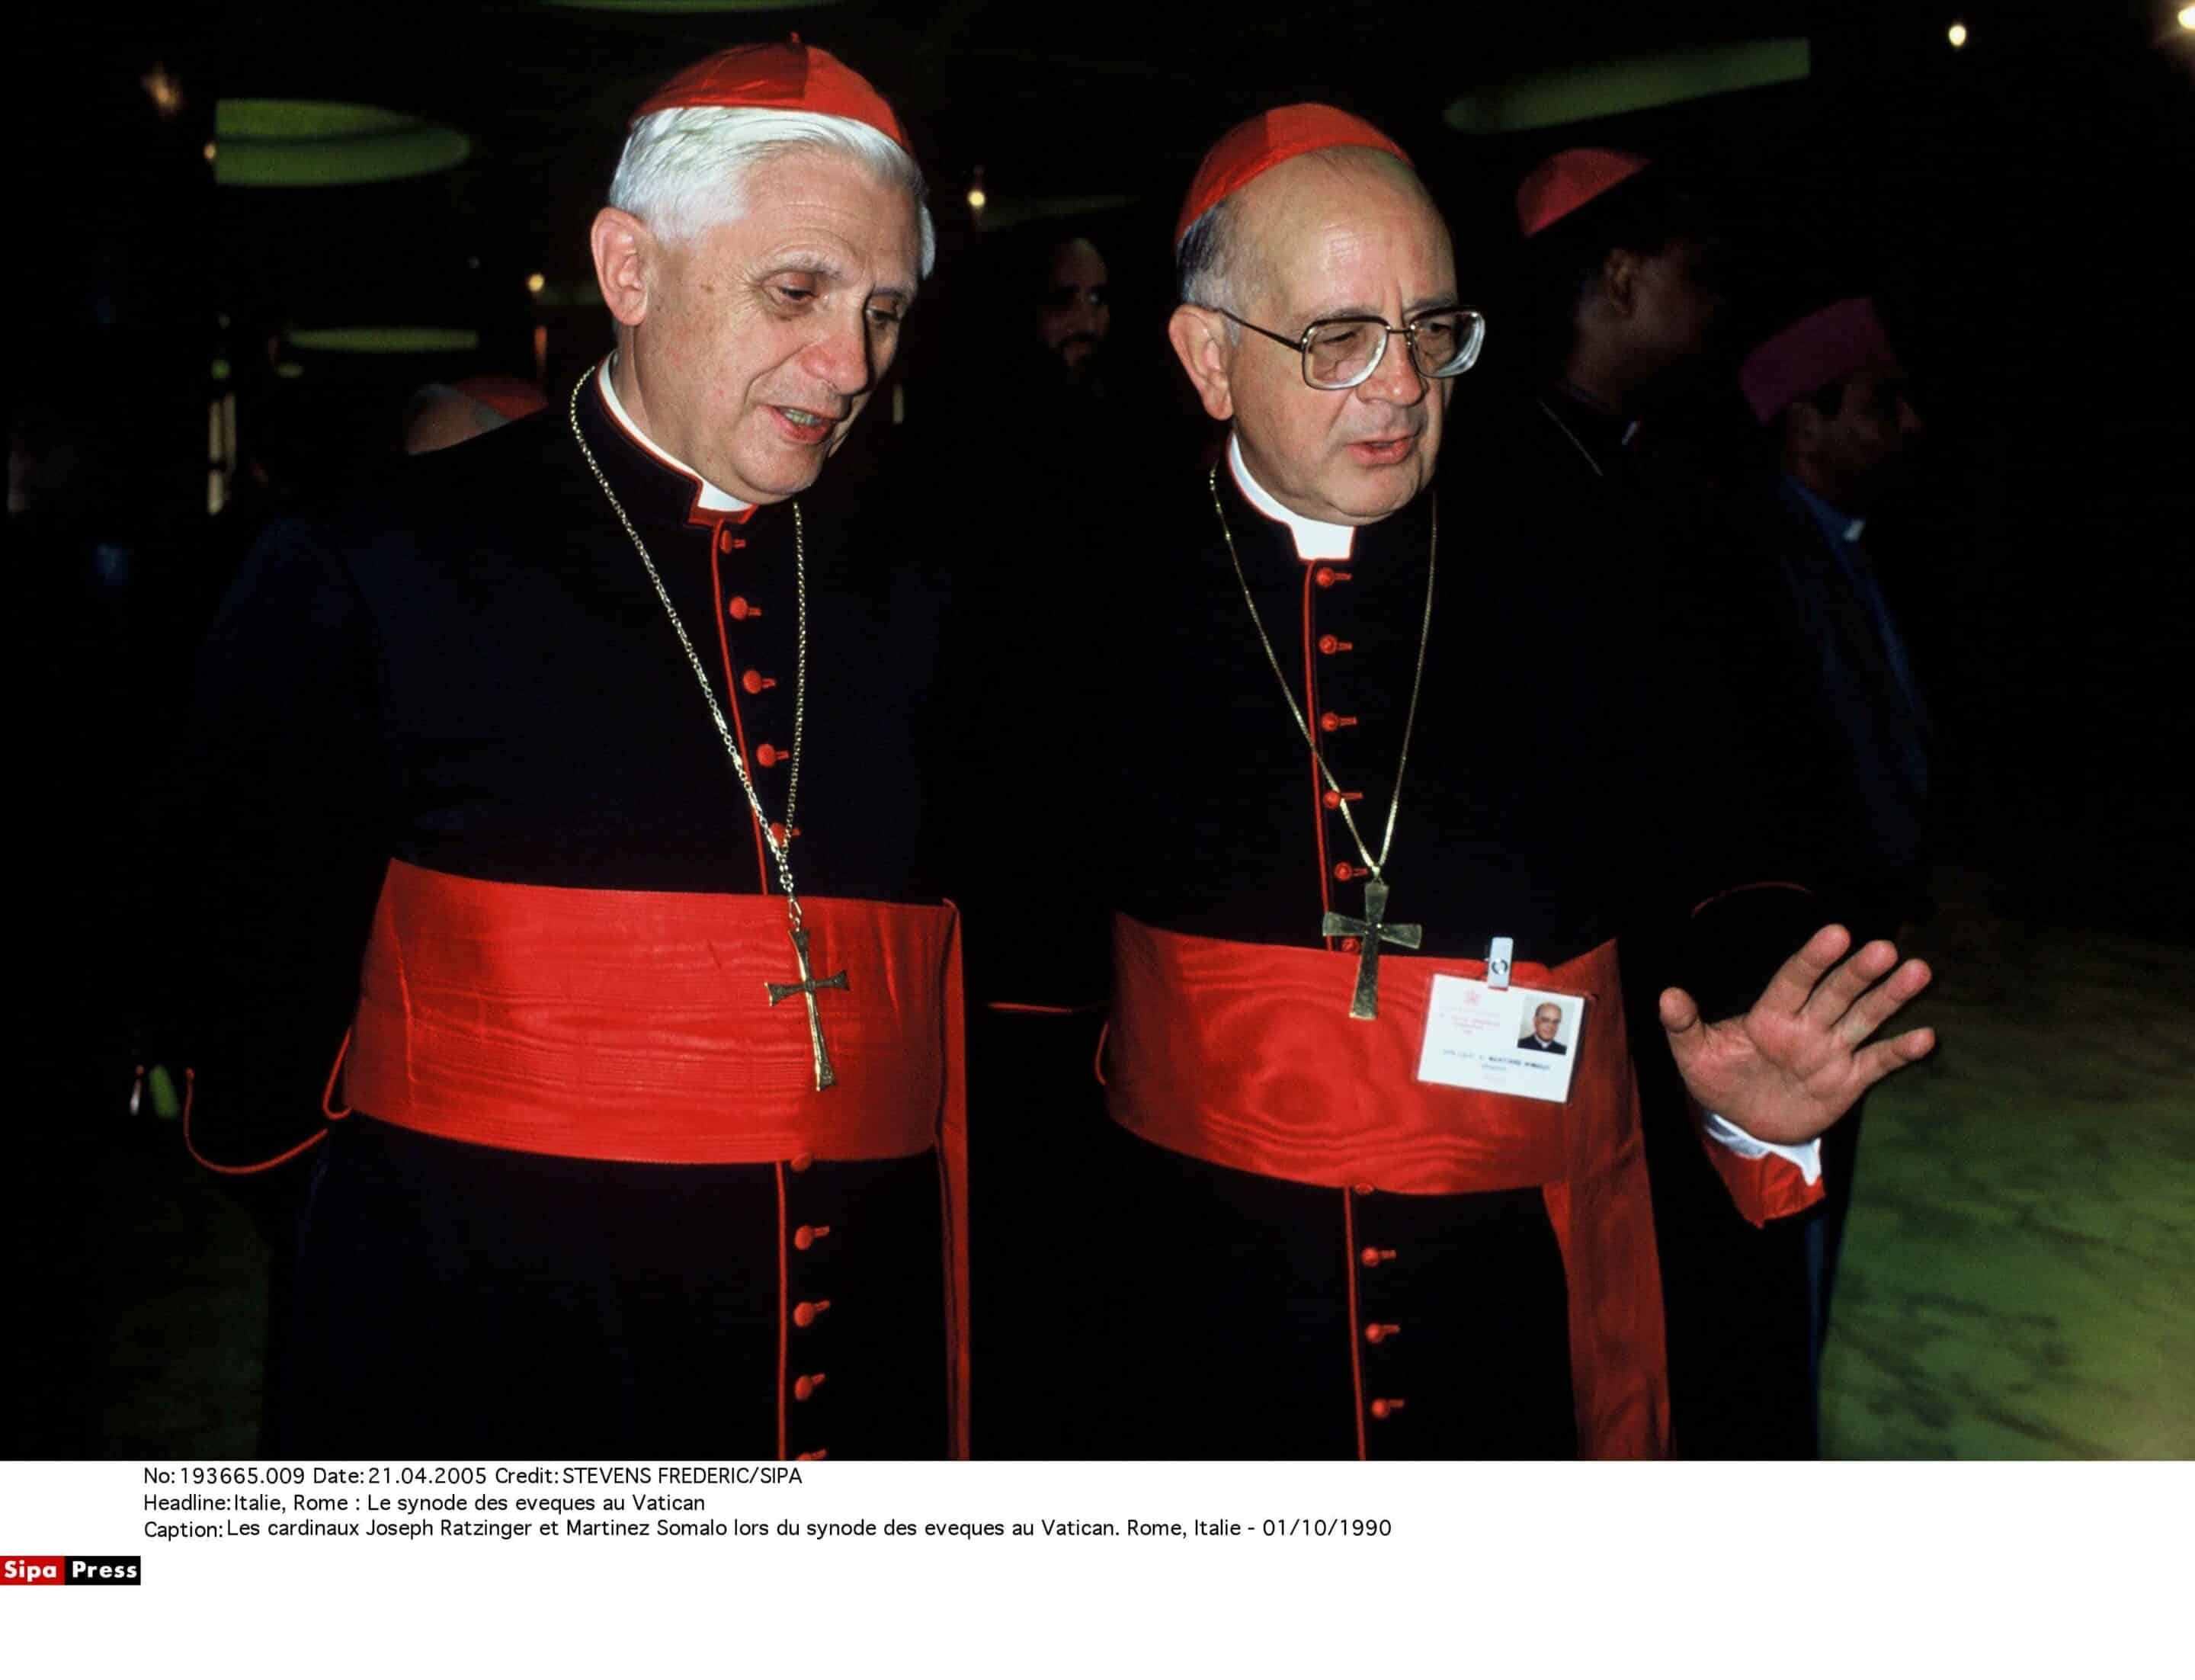 Les cardinaux Joseph Ratzinger et Martinez Somalo lors du synode des eveques au Vatican. Rome, Italie - 01/10/1990 (c) Sipa